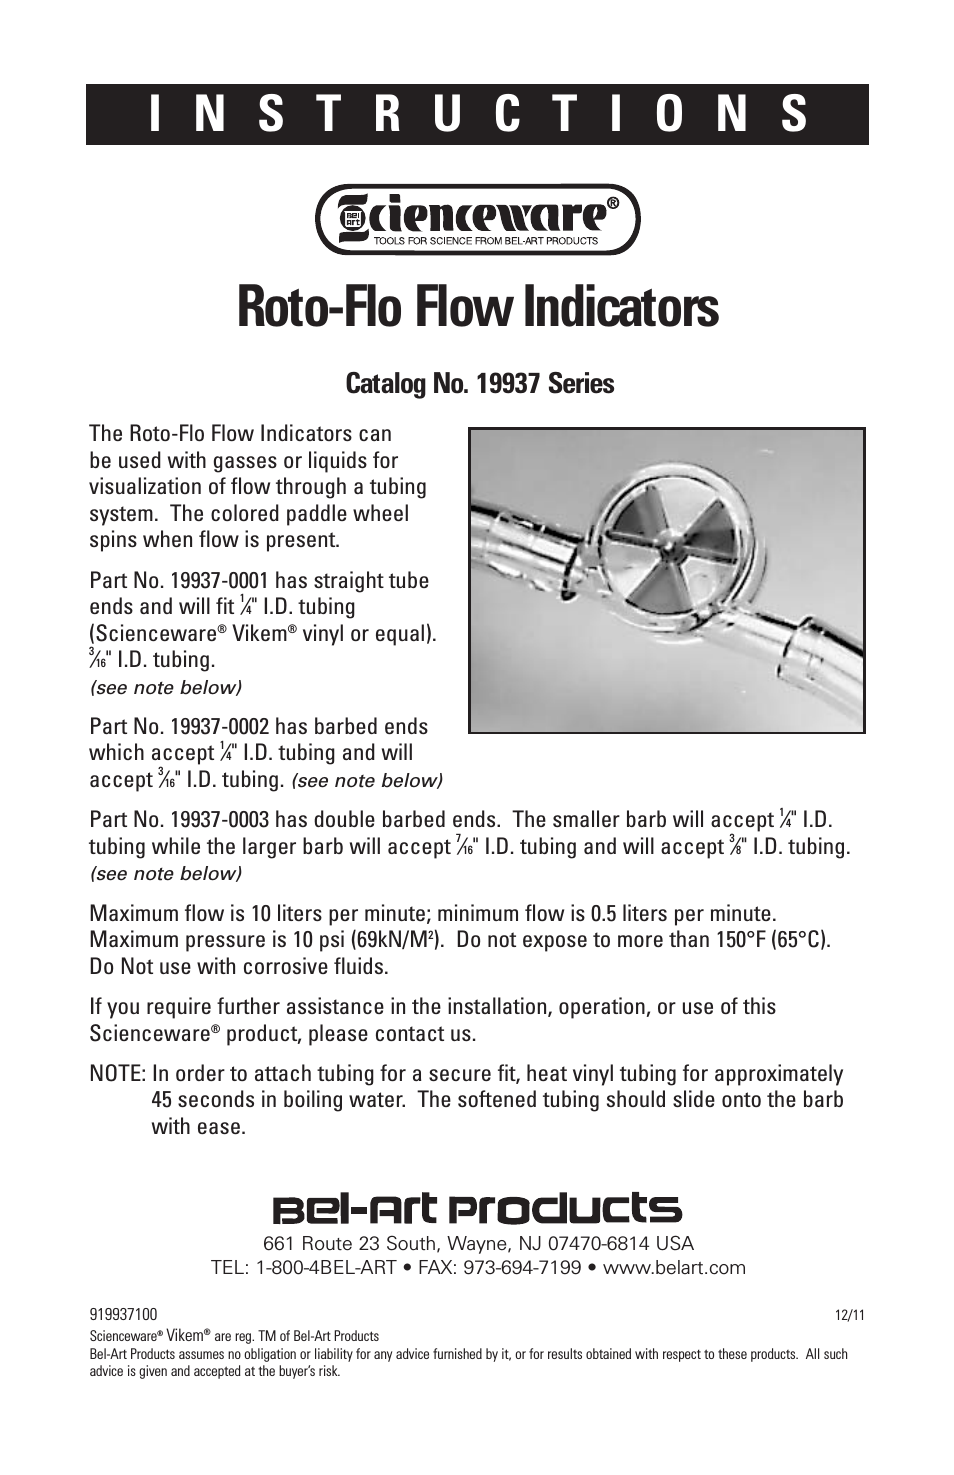 Roto-Flo Flow Indicators 19937 Series